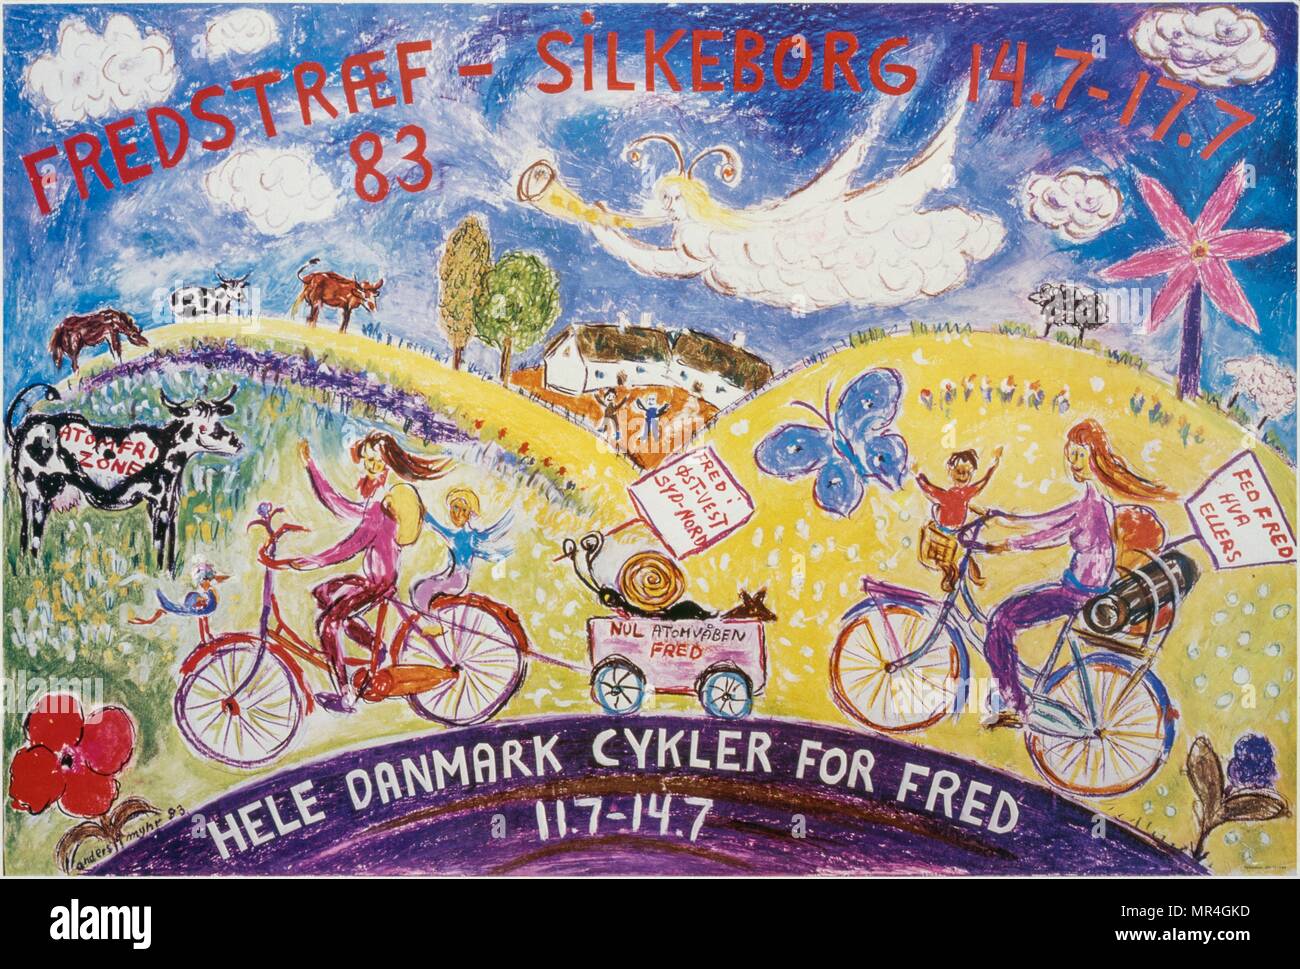 Cartel danés propugna el ciclismo 1977 Foto de stock